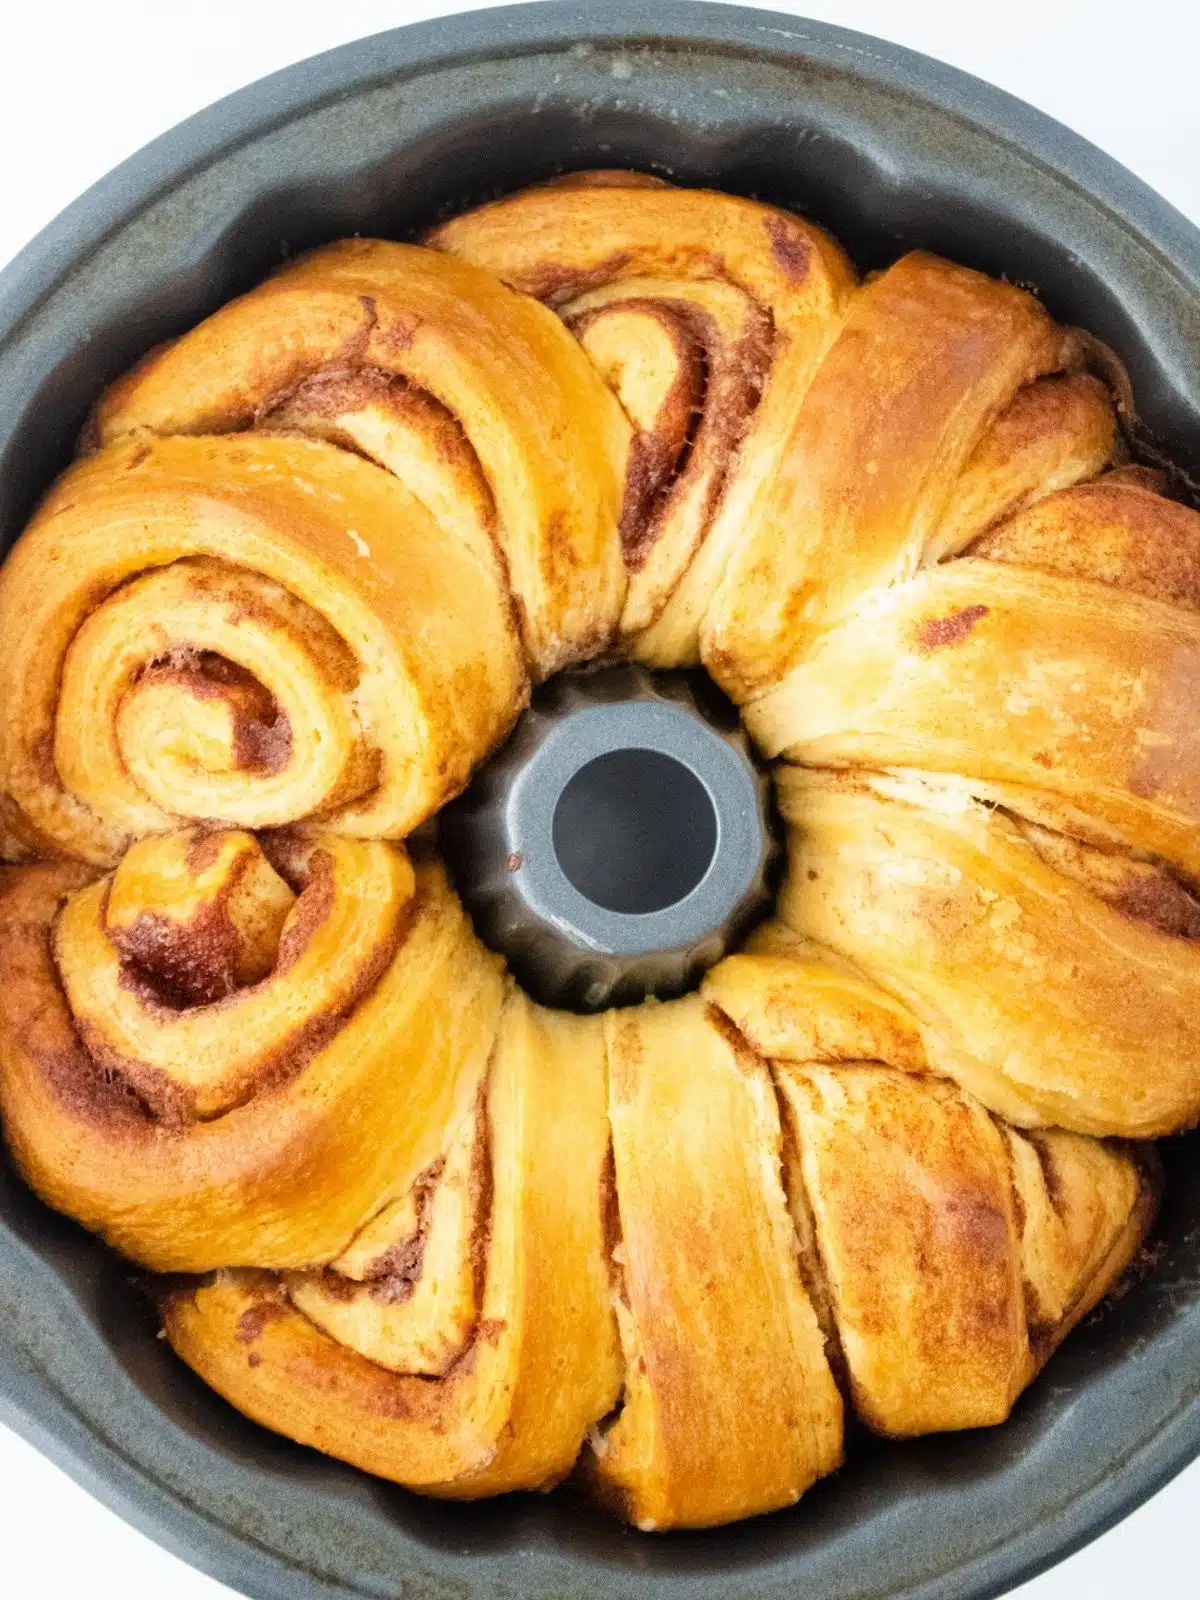 Sticky buns baked in a bundt pan